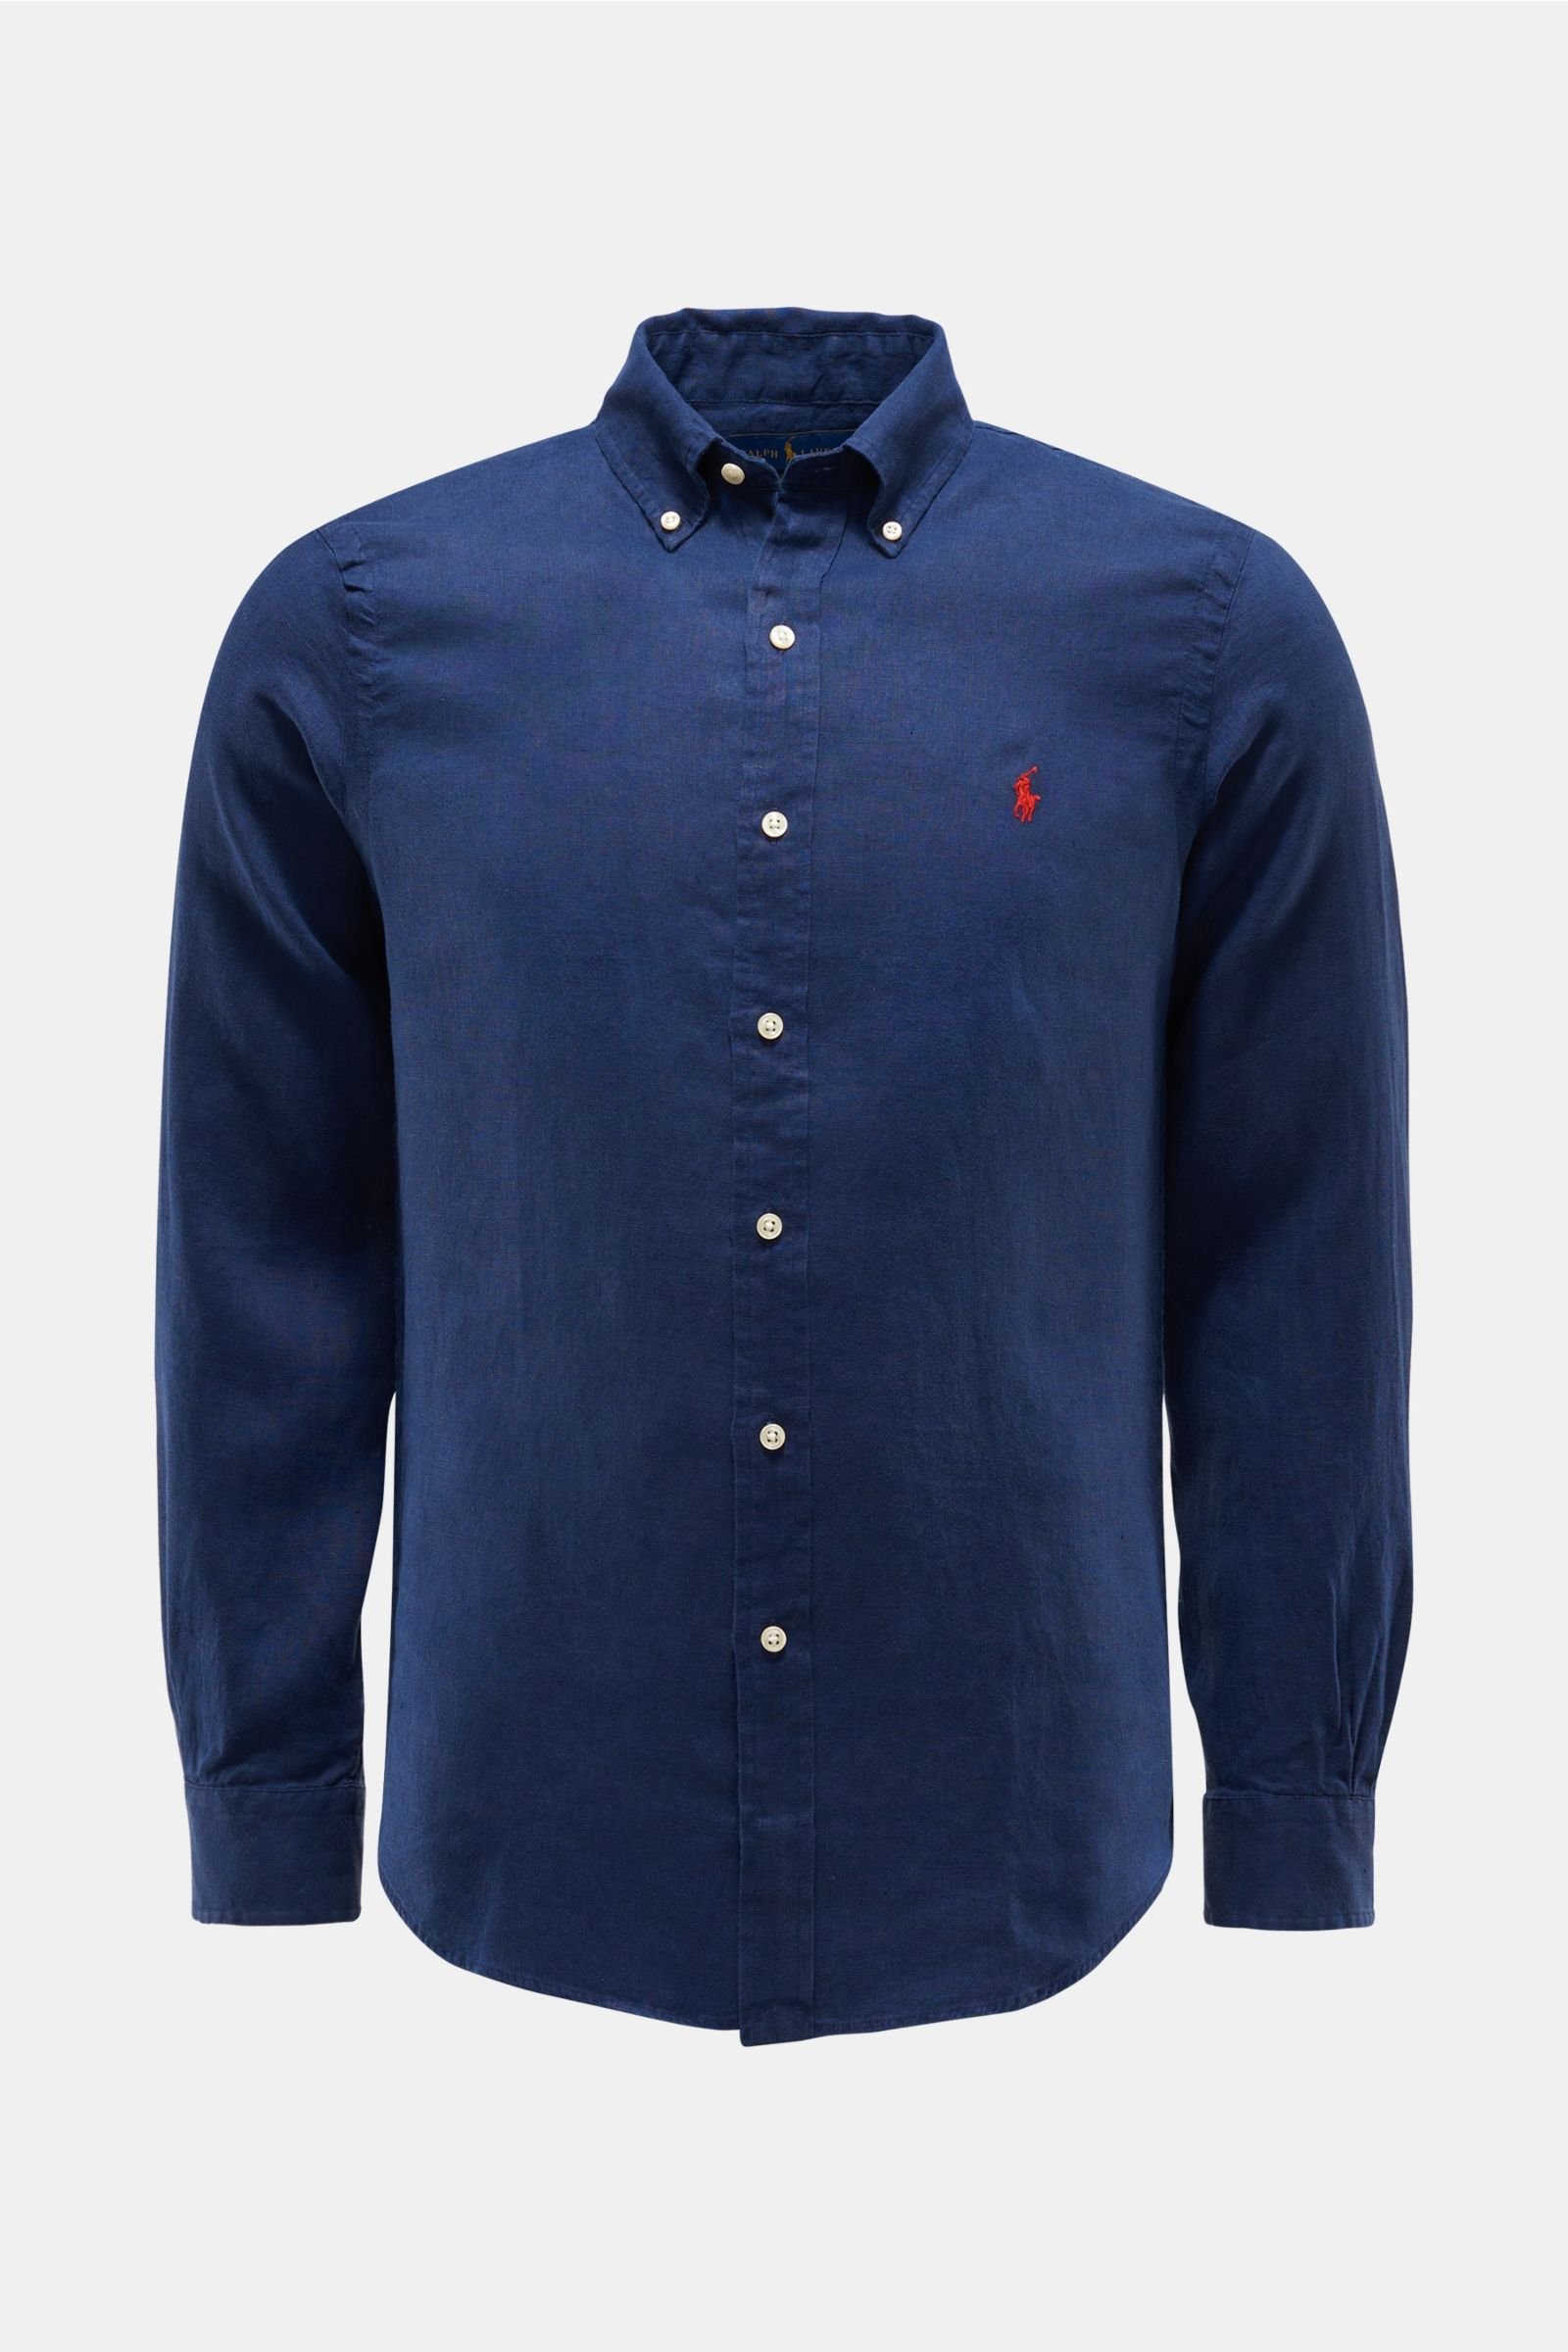 Linen shirt button-down collar navy